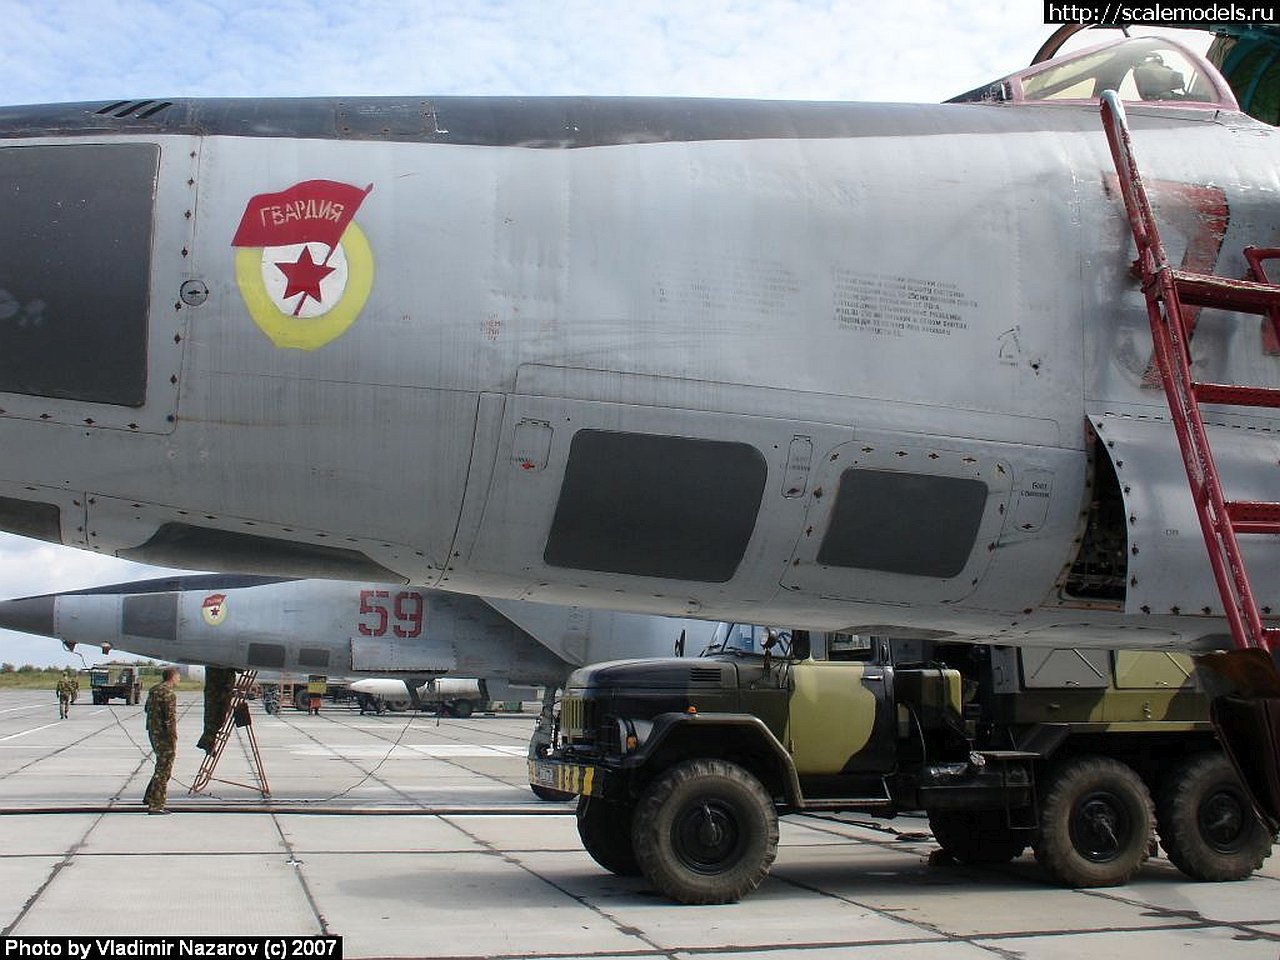 Kittyhawk+48th+MiG-25+RBRBT+Foxbat+B+rev